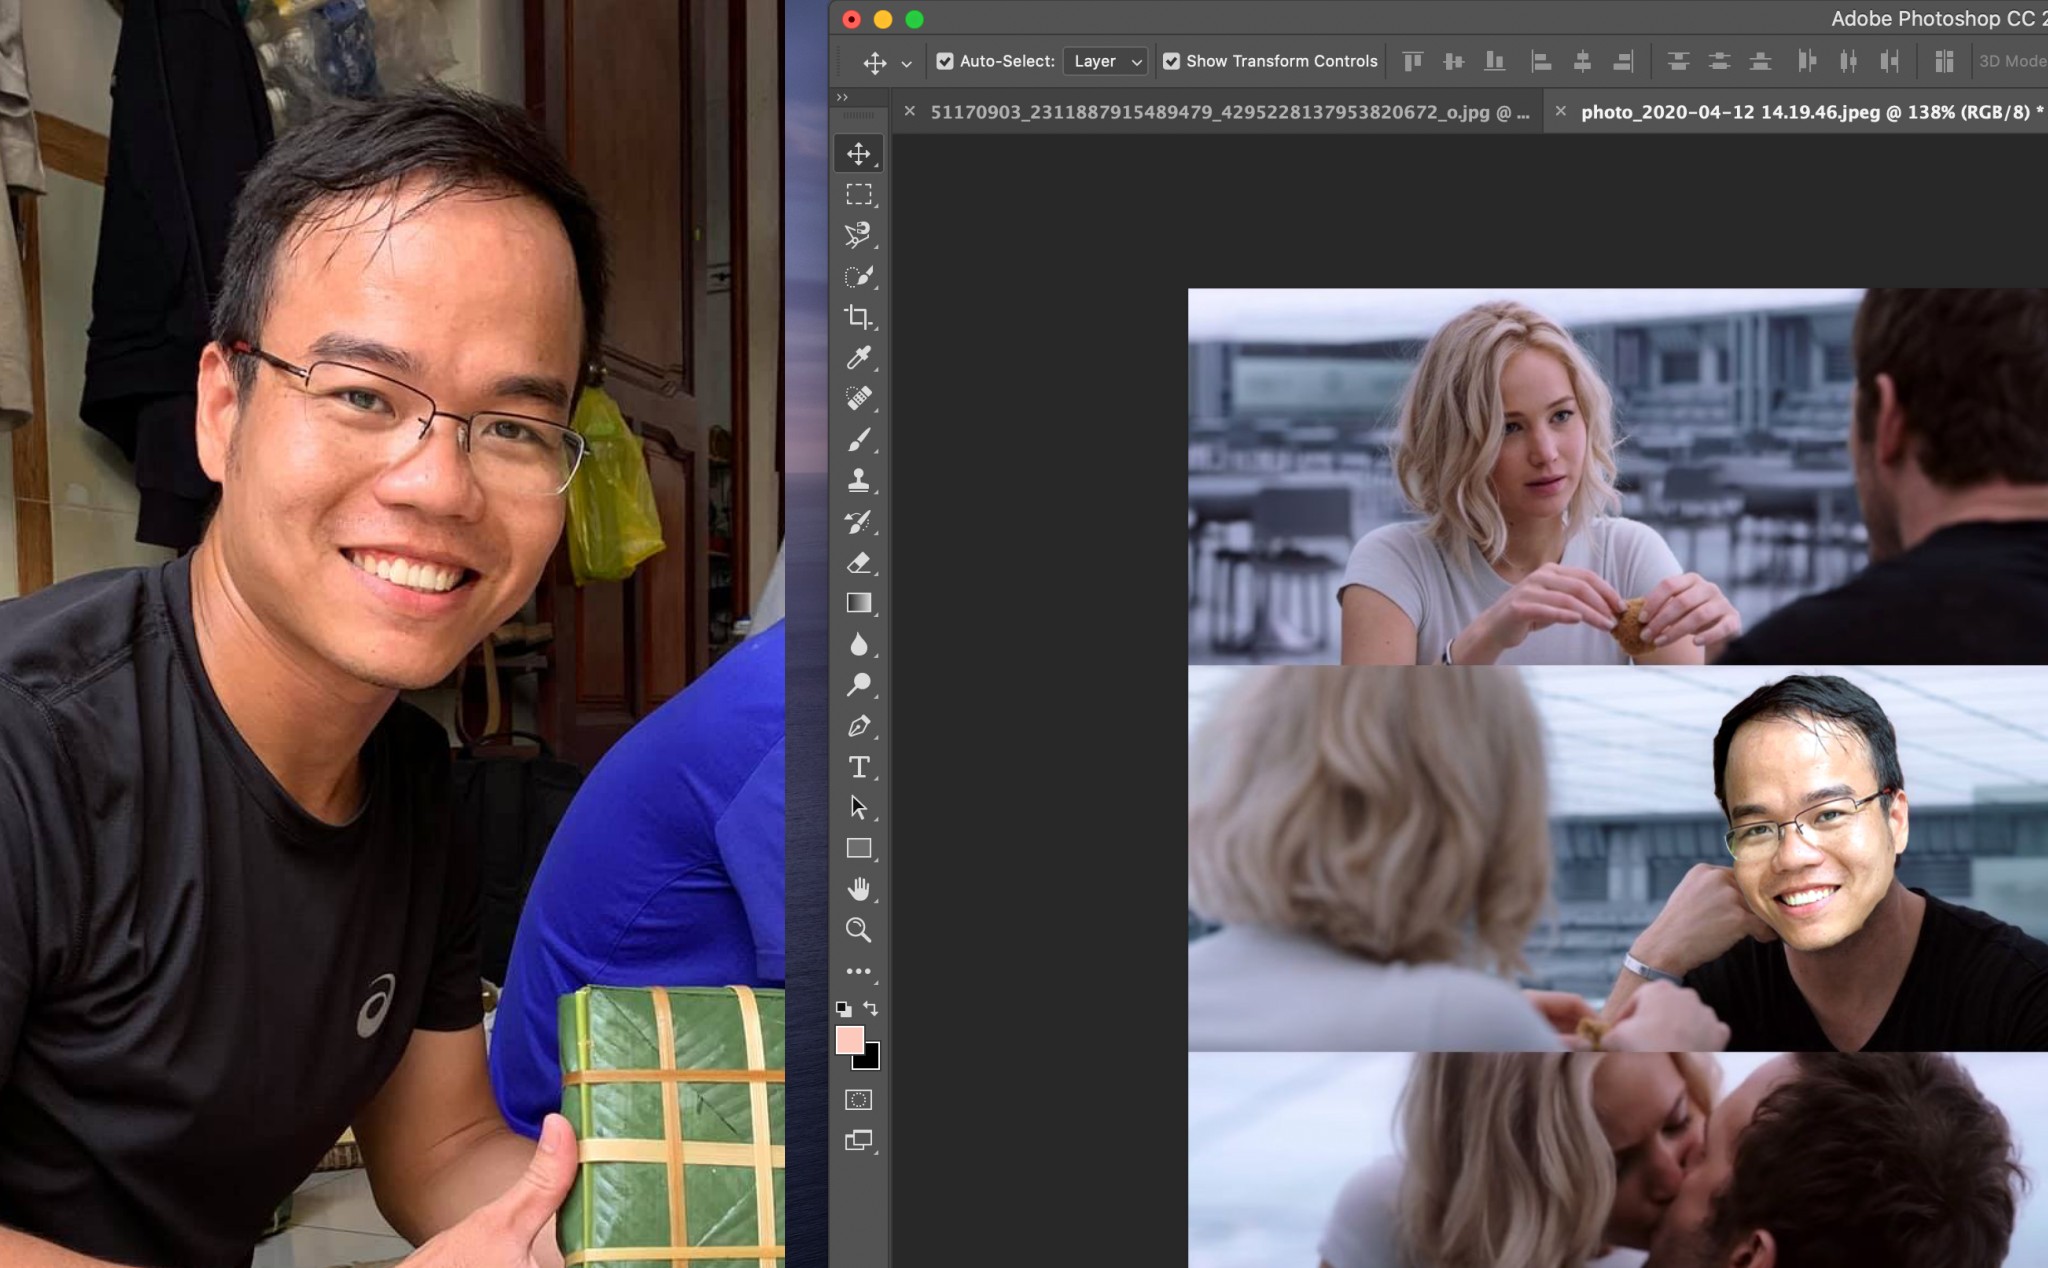 [Video] Photoshop tại nhà: Chia sẻ về công cụ, cách cắt ghép ảnh